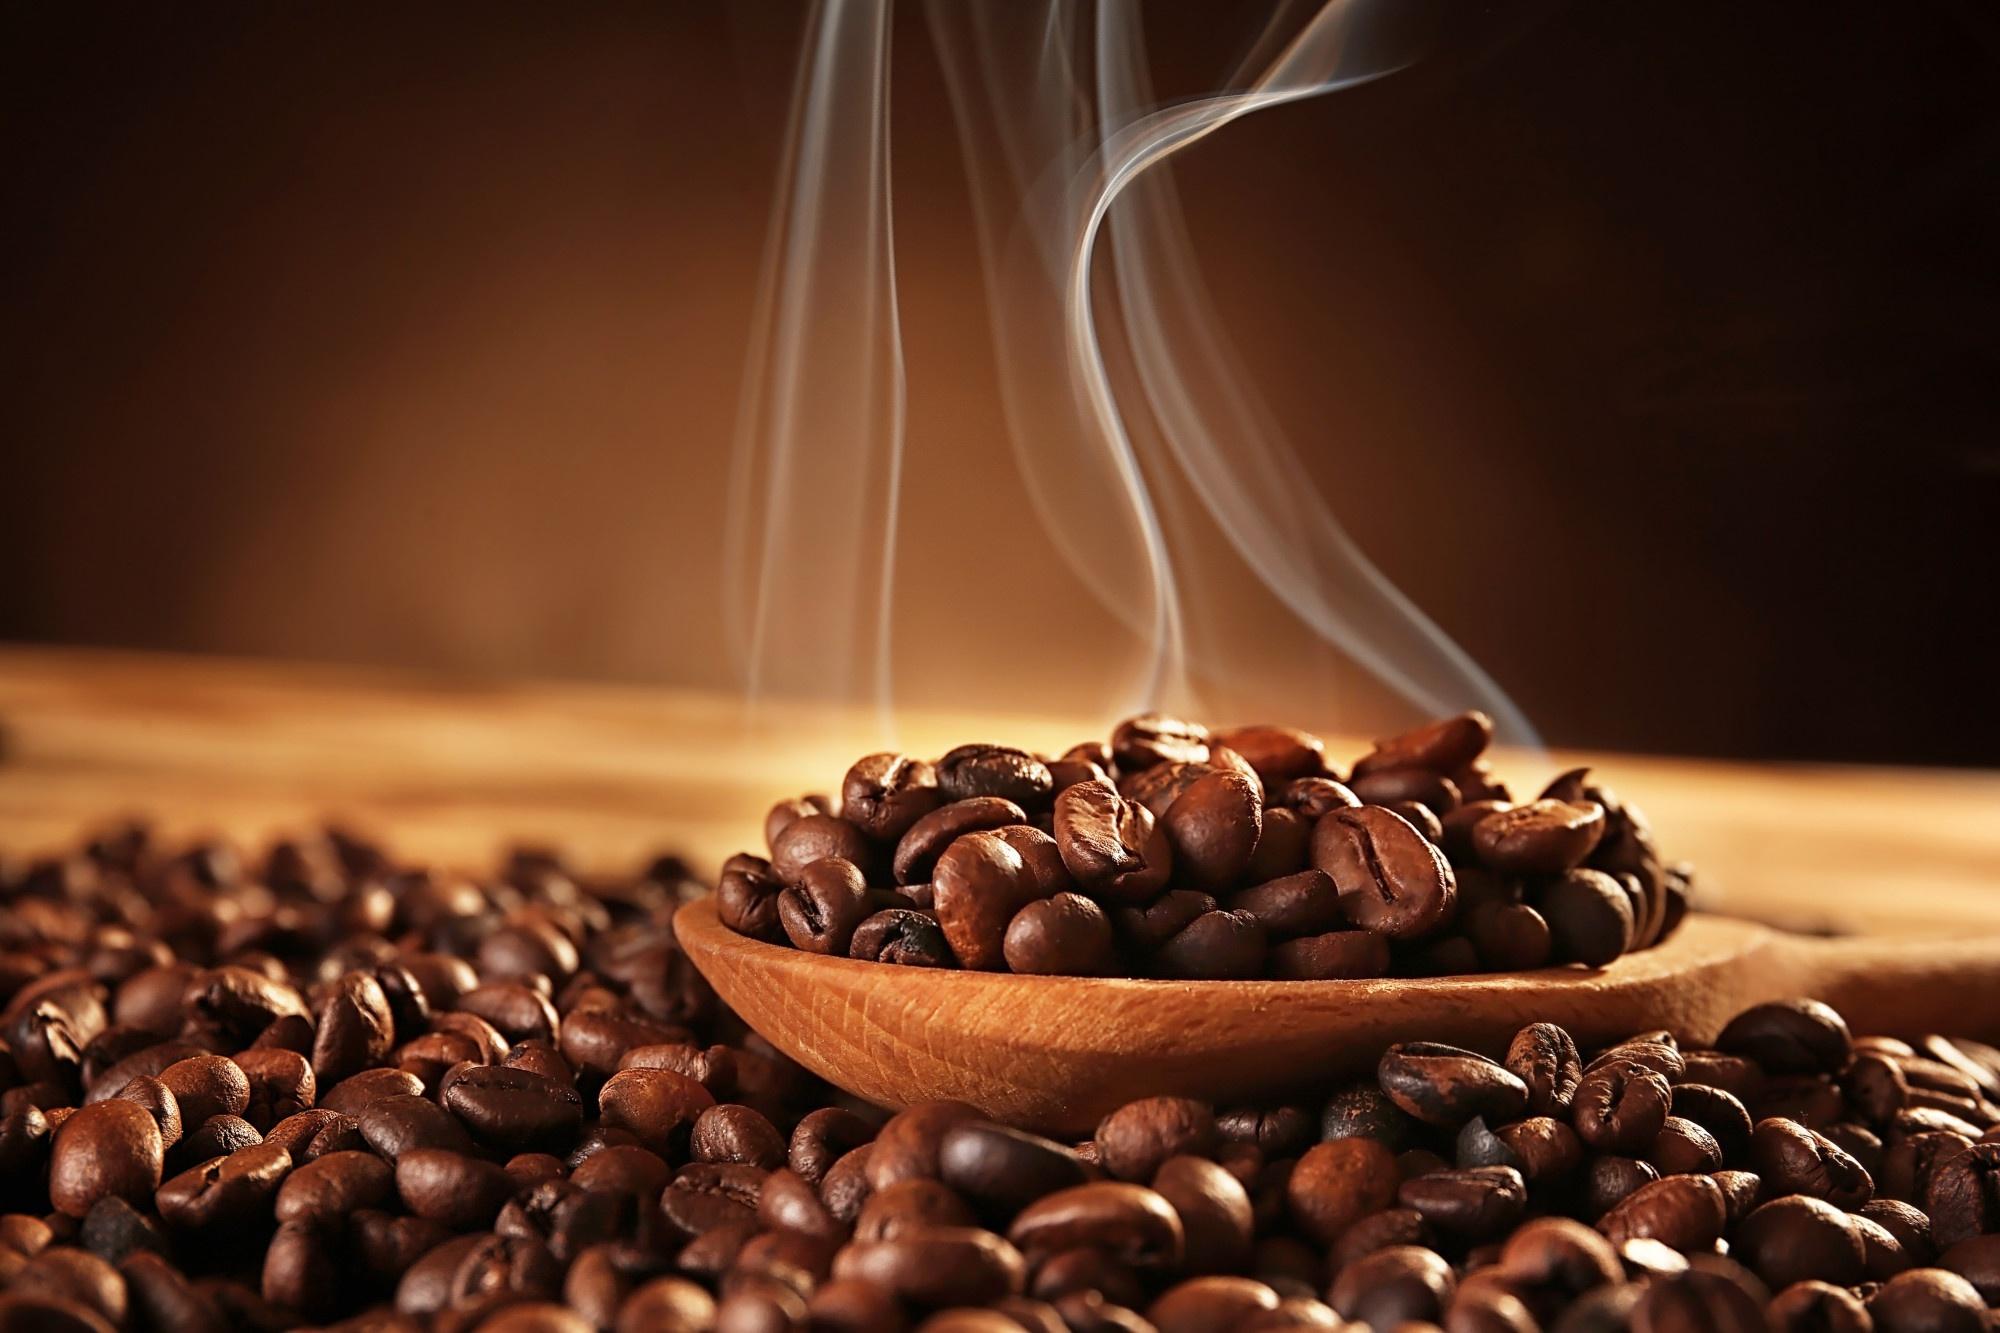 Cách bảo quản cà phê sau khi pha giữ nguyên hương vị